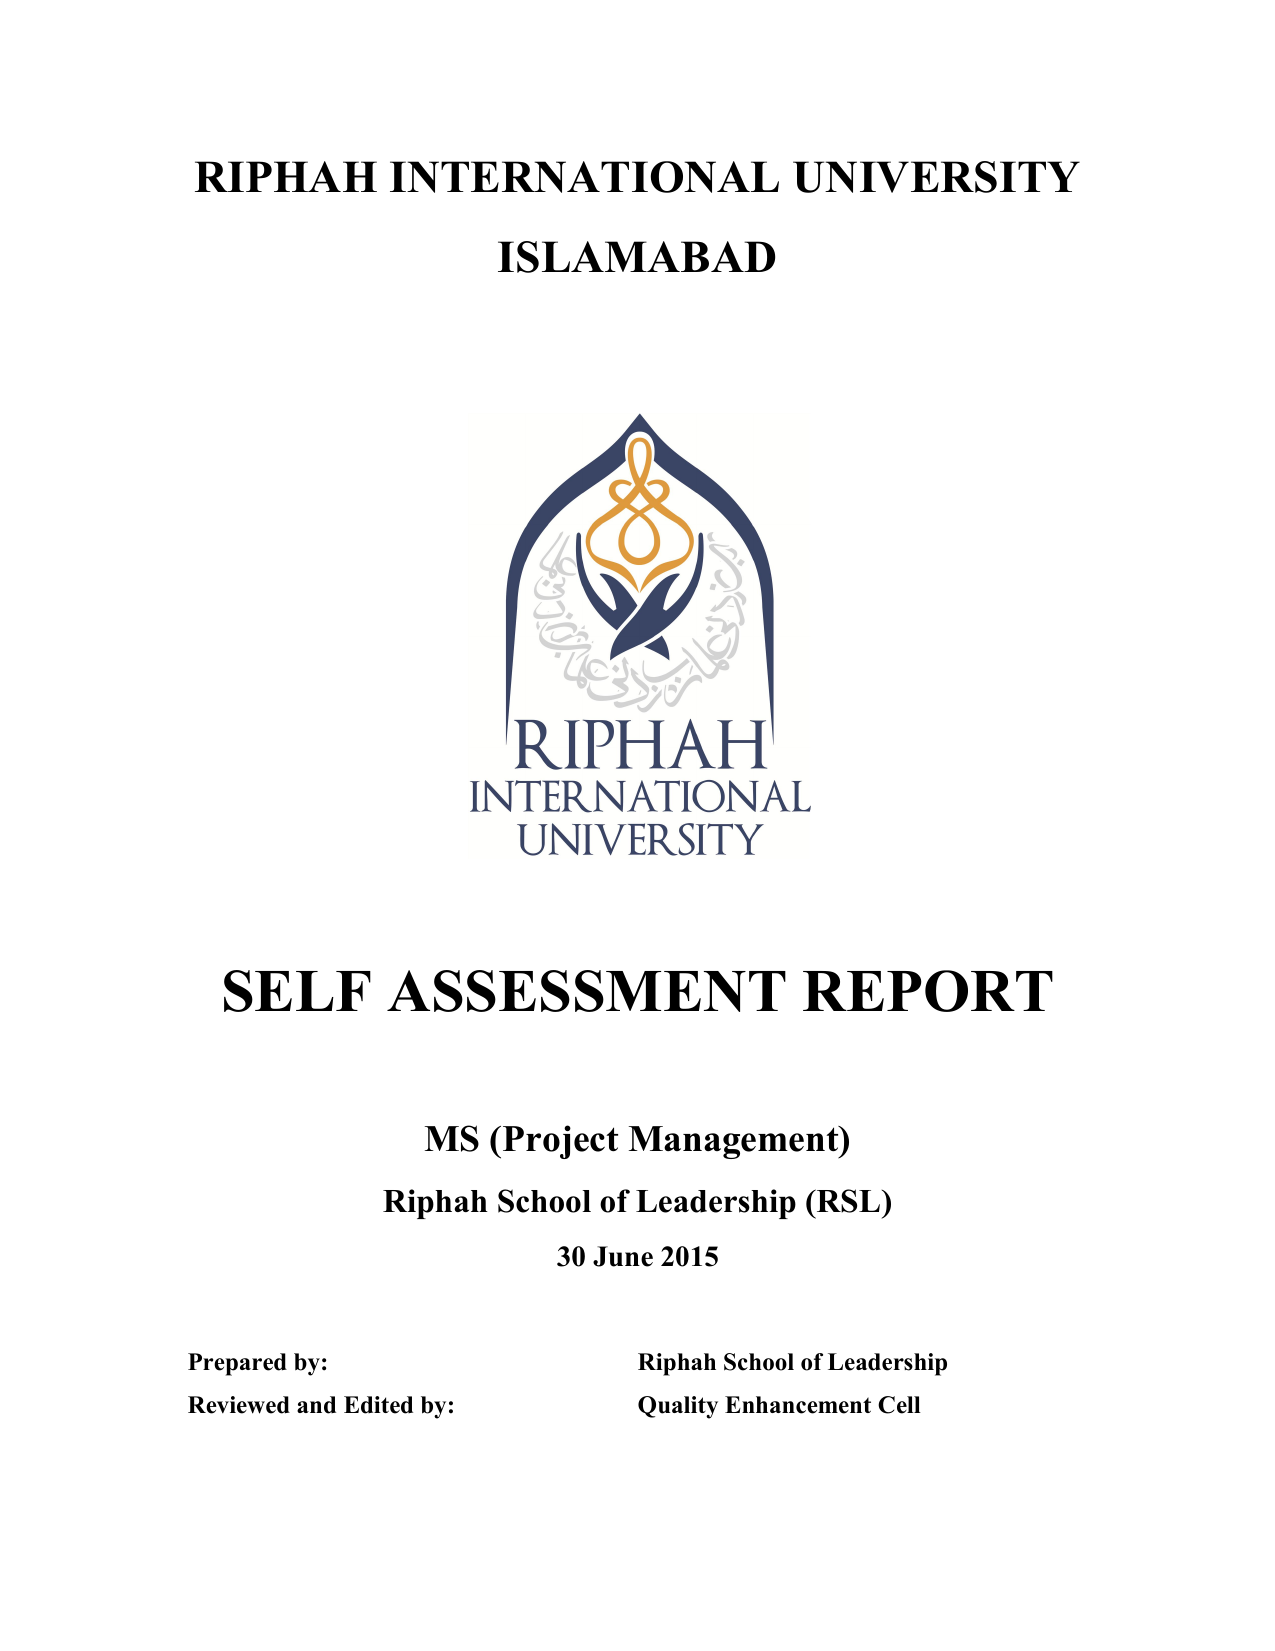 riphah international university thesis format